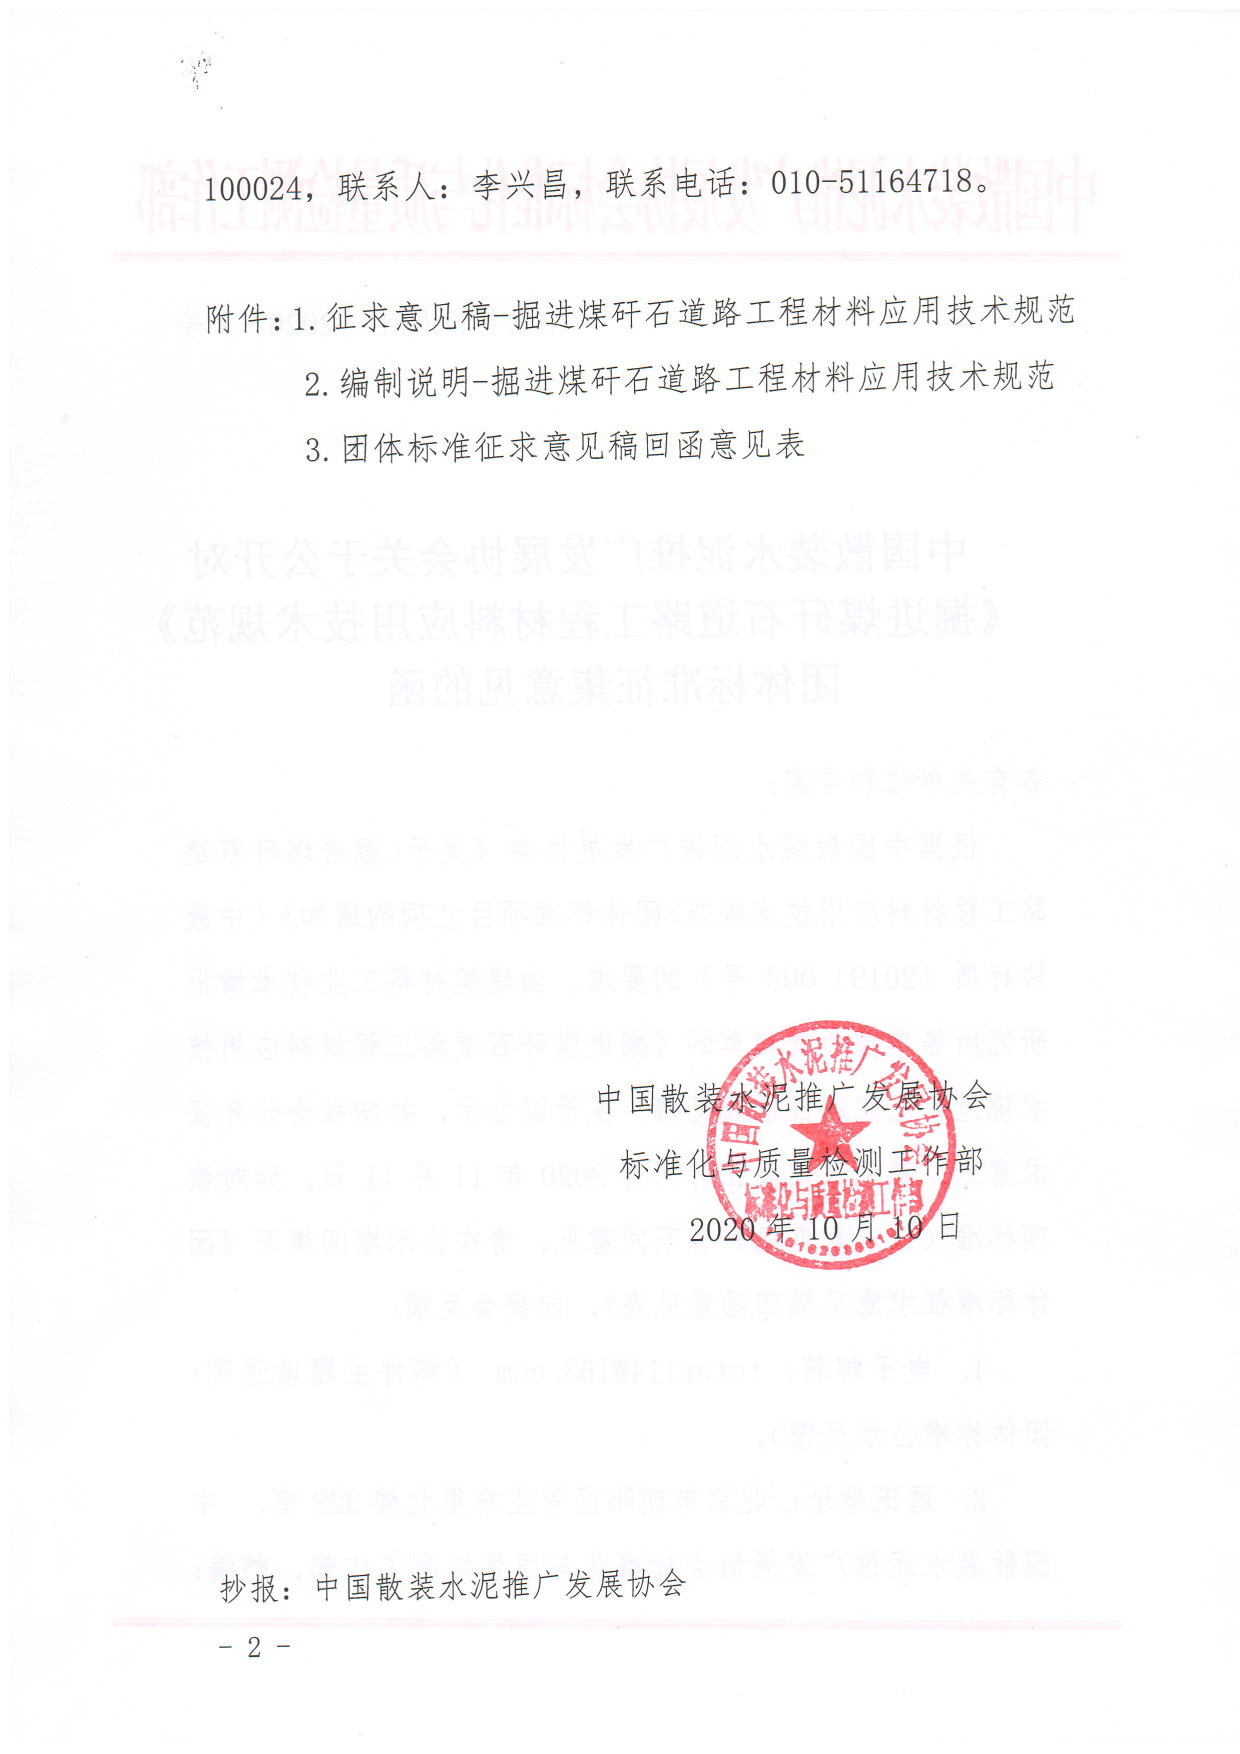 中散协标质函〔2020〕5号中国散装水泥推广发展协会关于公开对《掘进煤矸石道路工程材料应用技术规范》团体标准征集意见的函_12.png